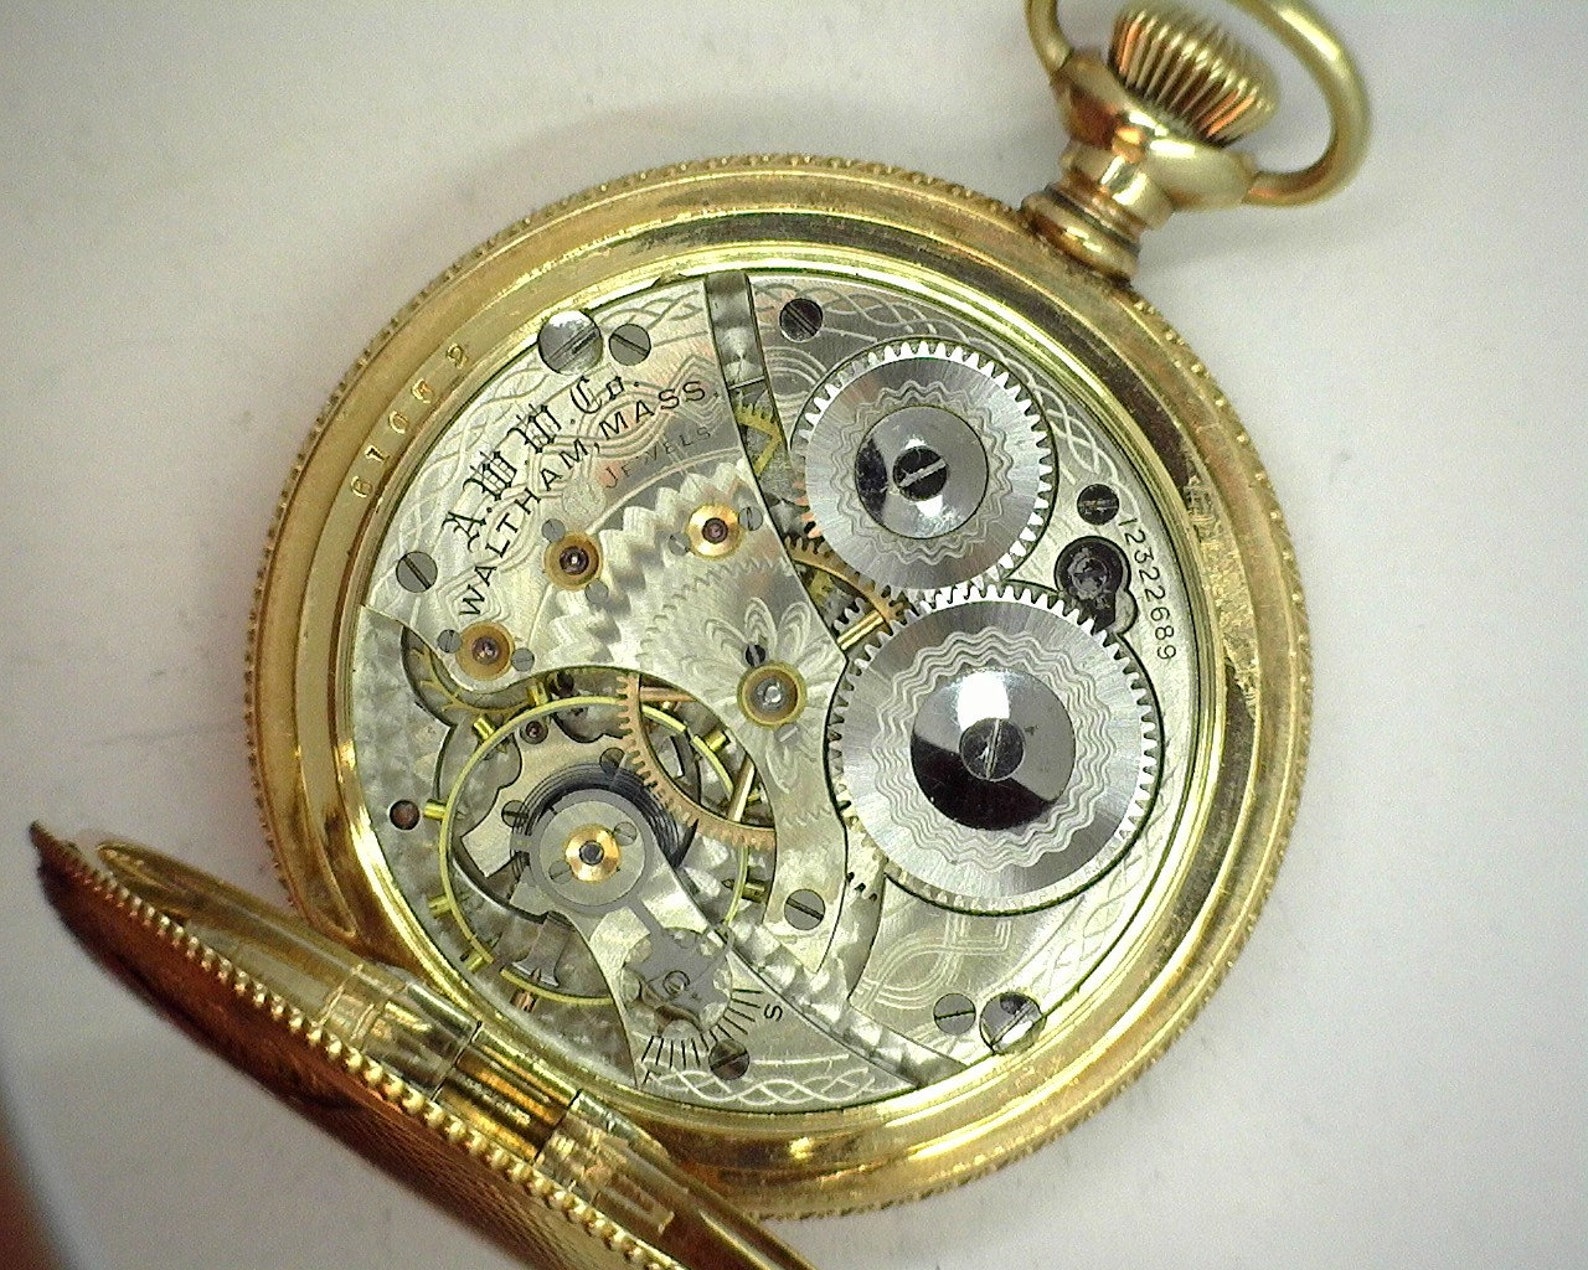 Waltham 17 Jewel Pocket Watch